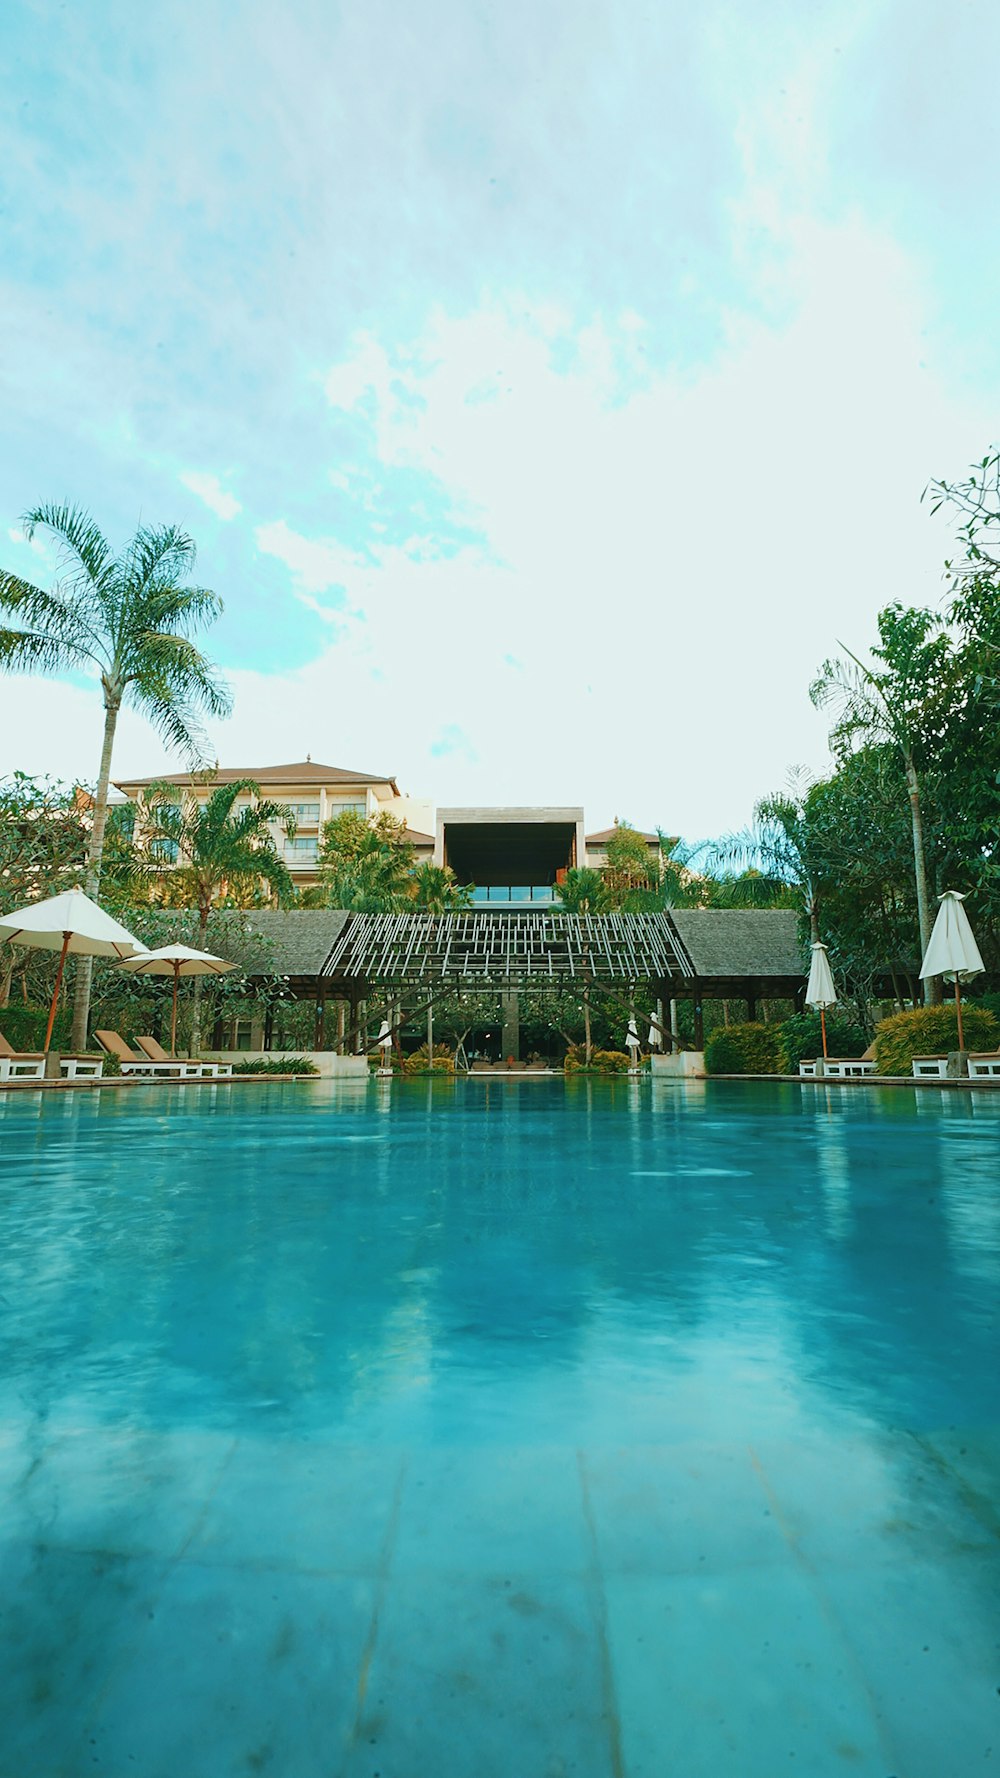 piscina blu vicino a palme verdi durante il giorno